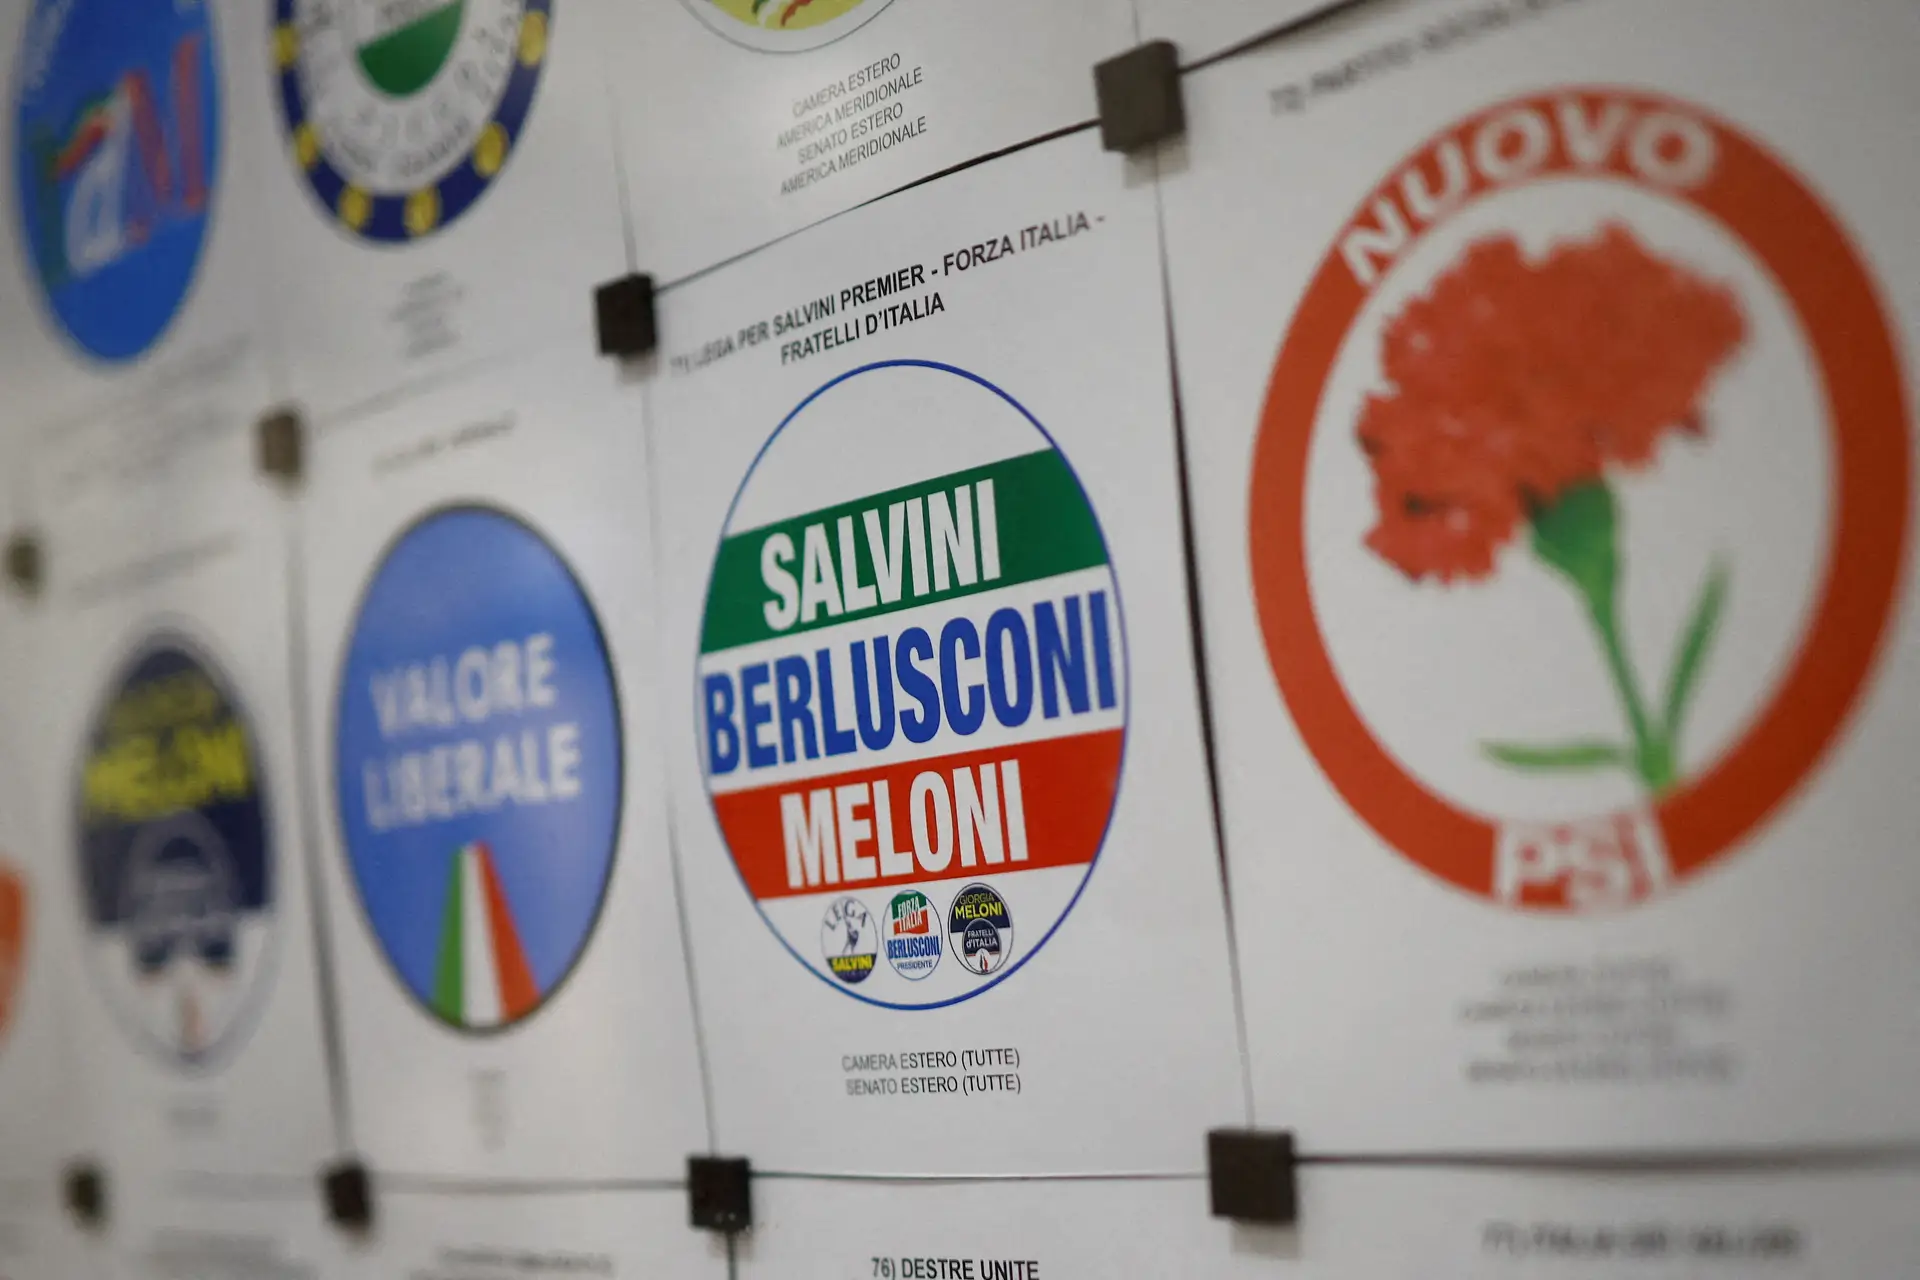 Eleições em Itália: crises do clima e energia abalam campanha centrada em "ambiguidades" da direita